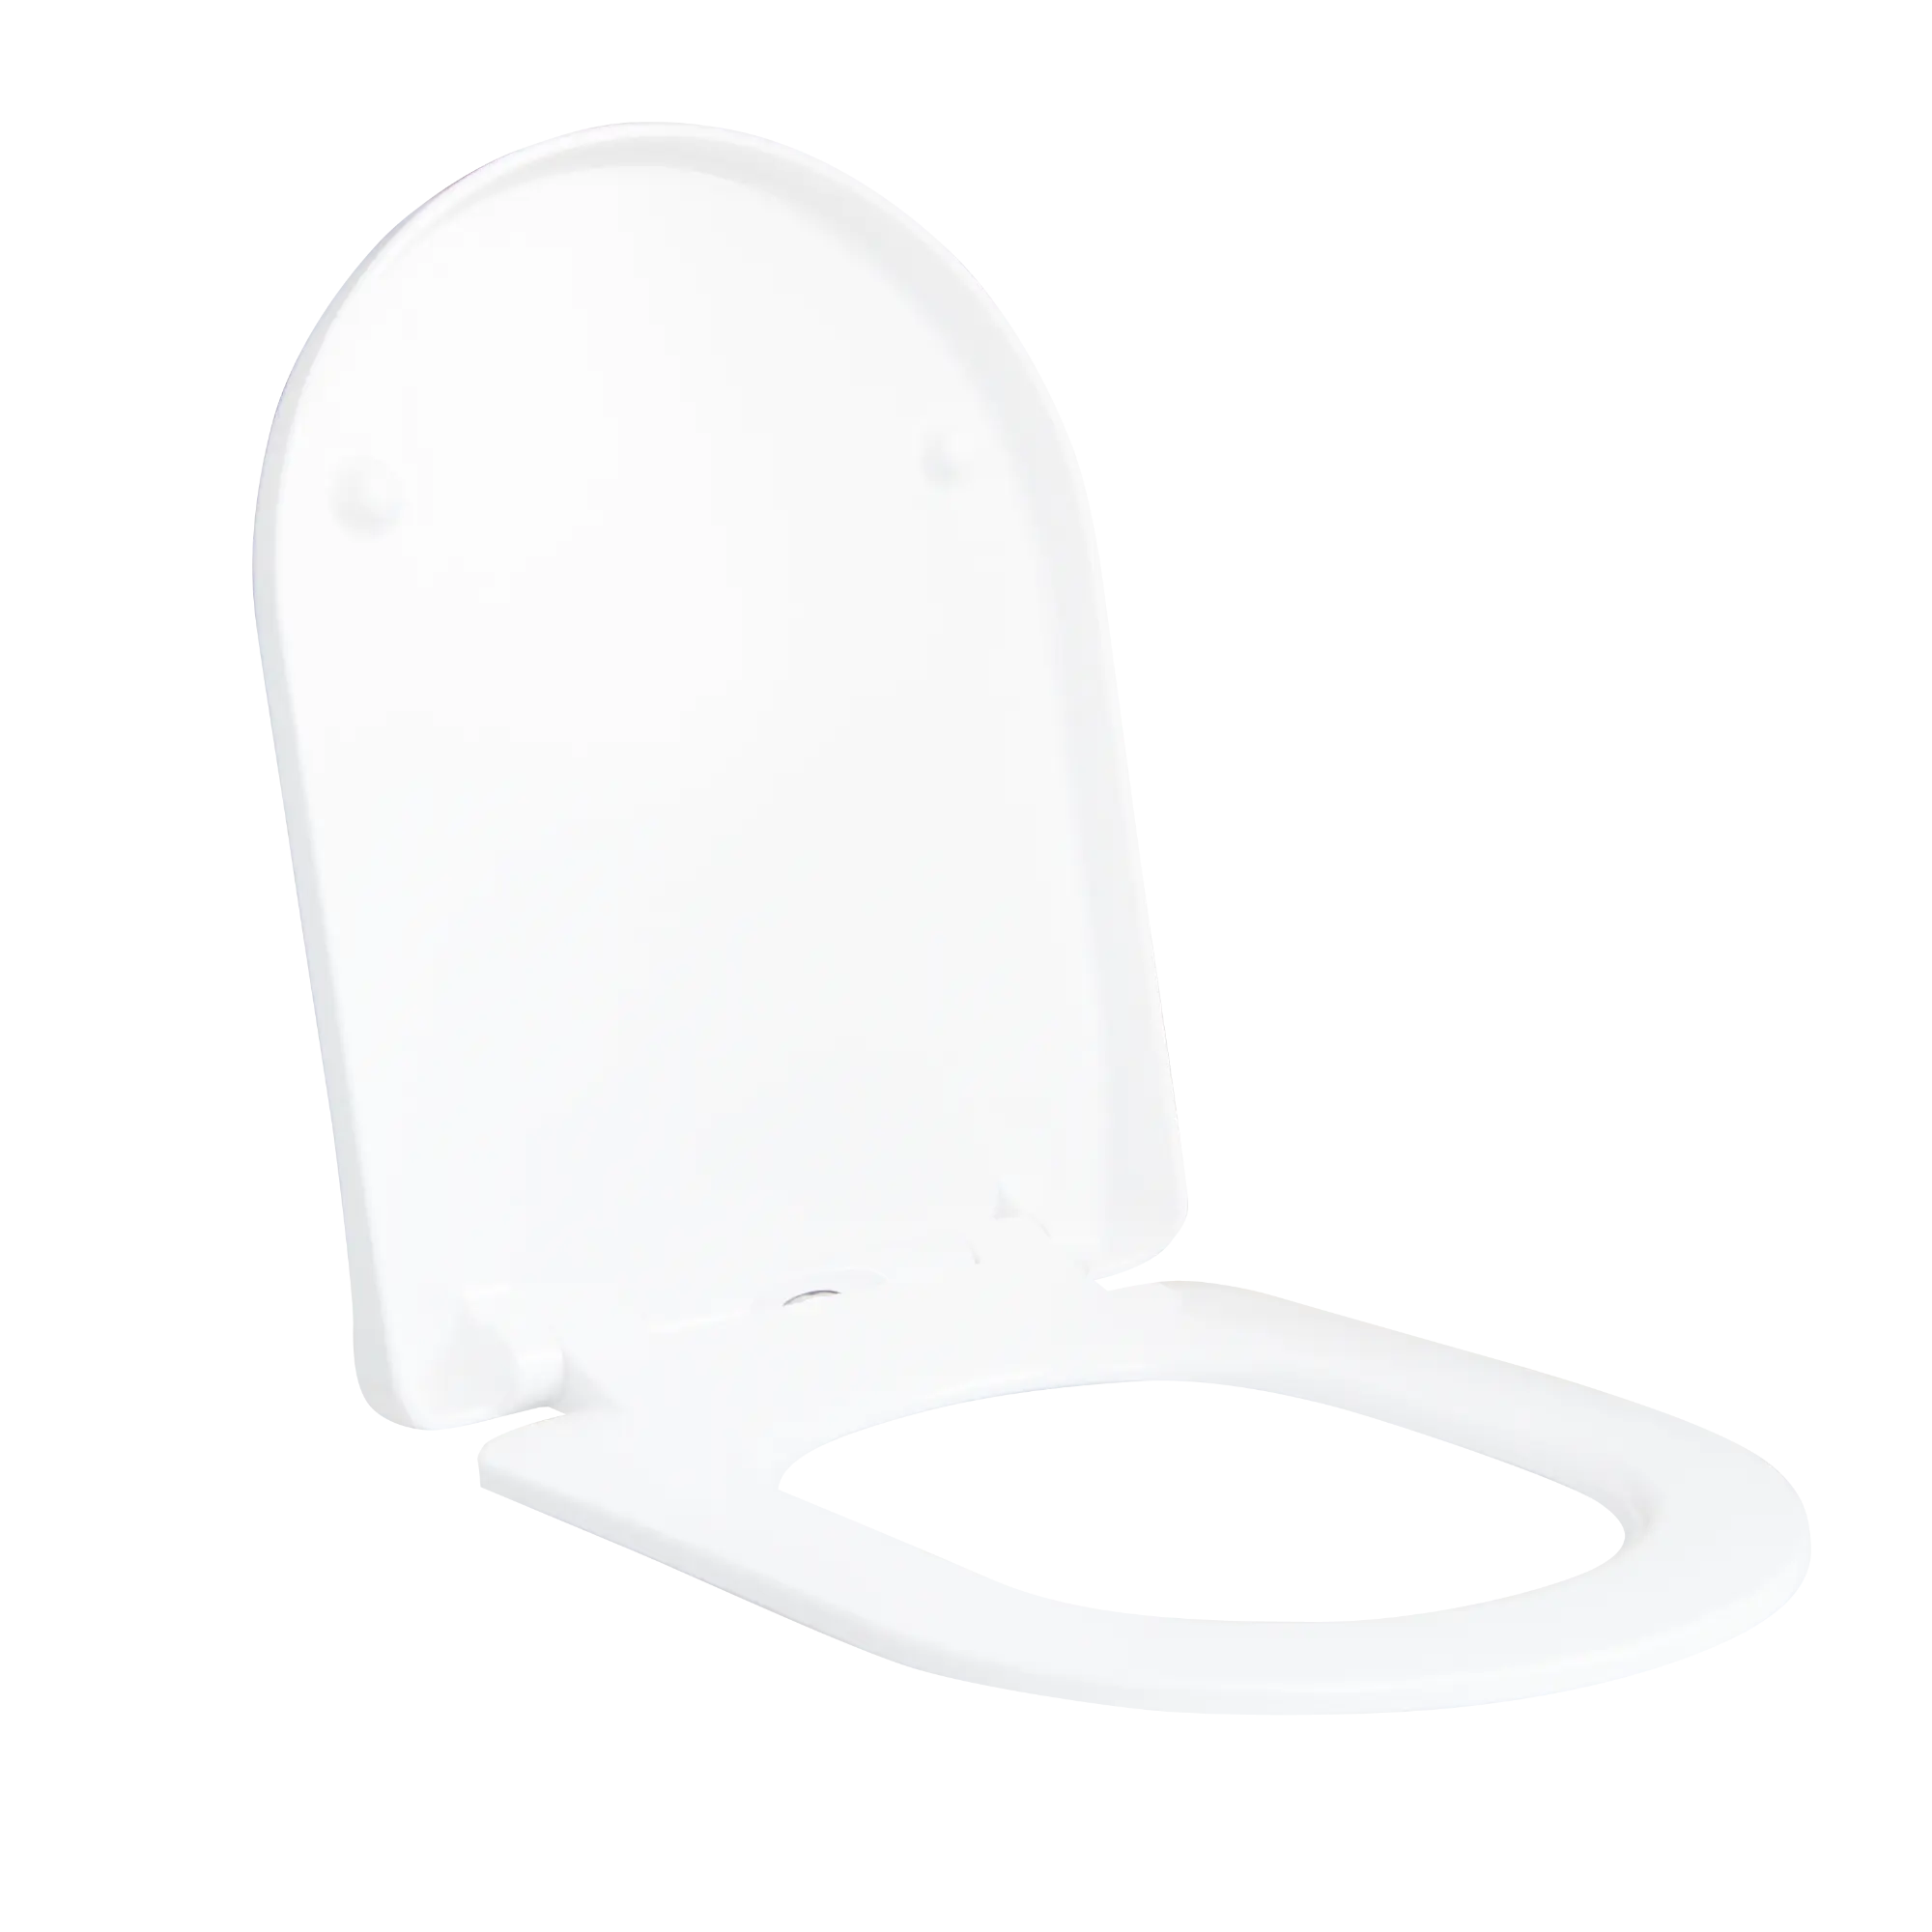 Abattant WC - Thermodur - Fix-Clip/Easy-close et veilleuse nuit